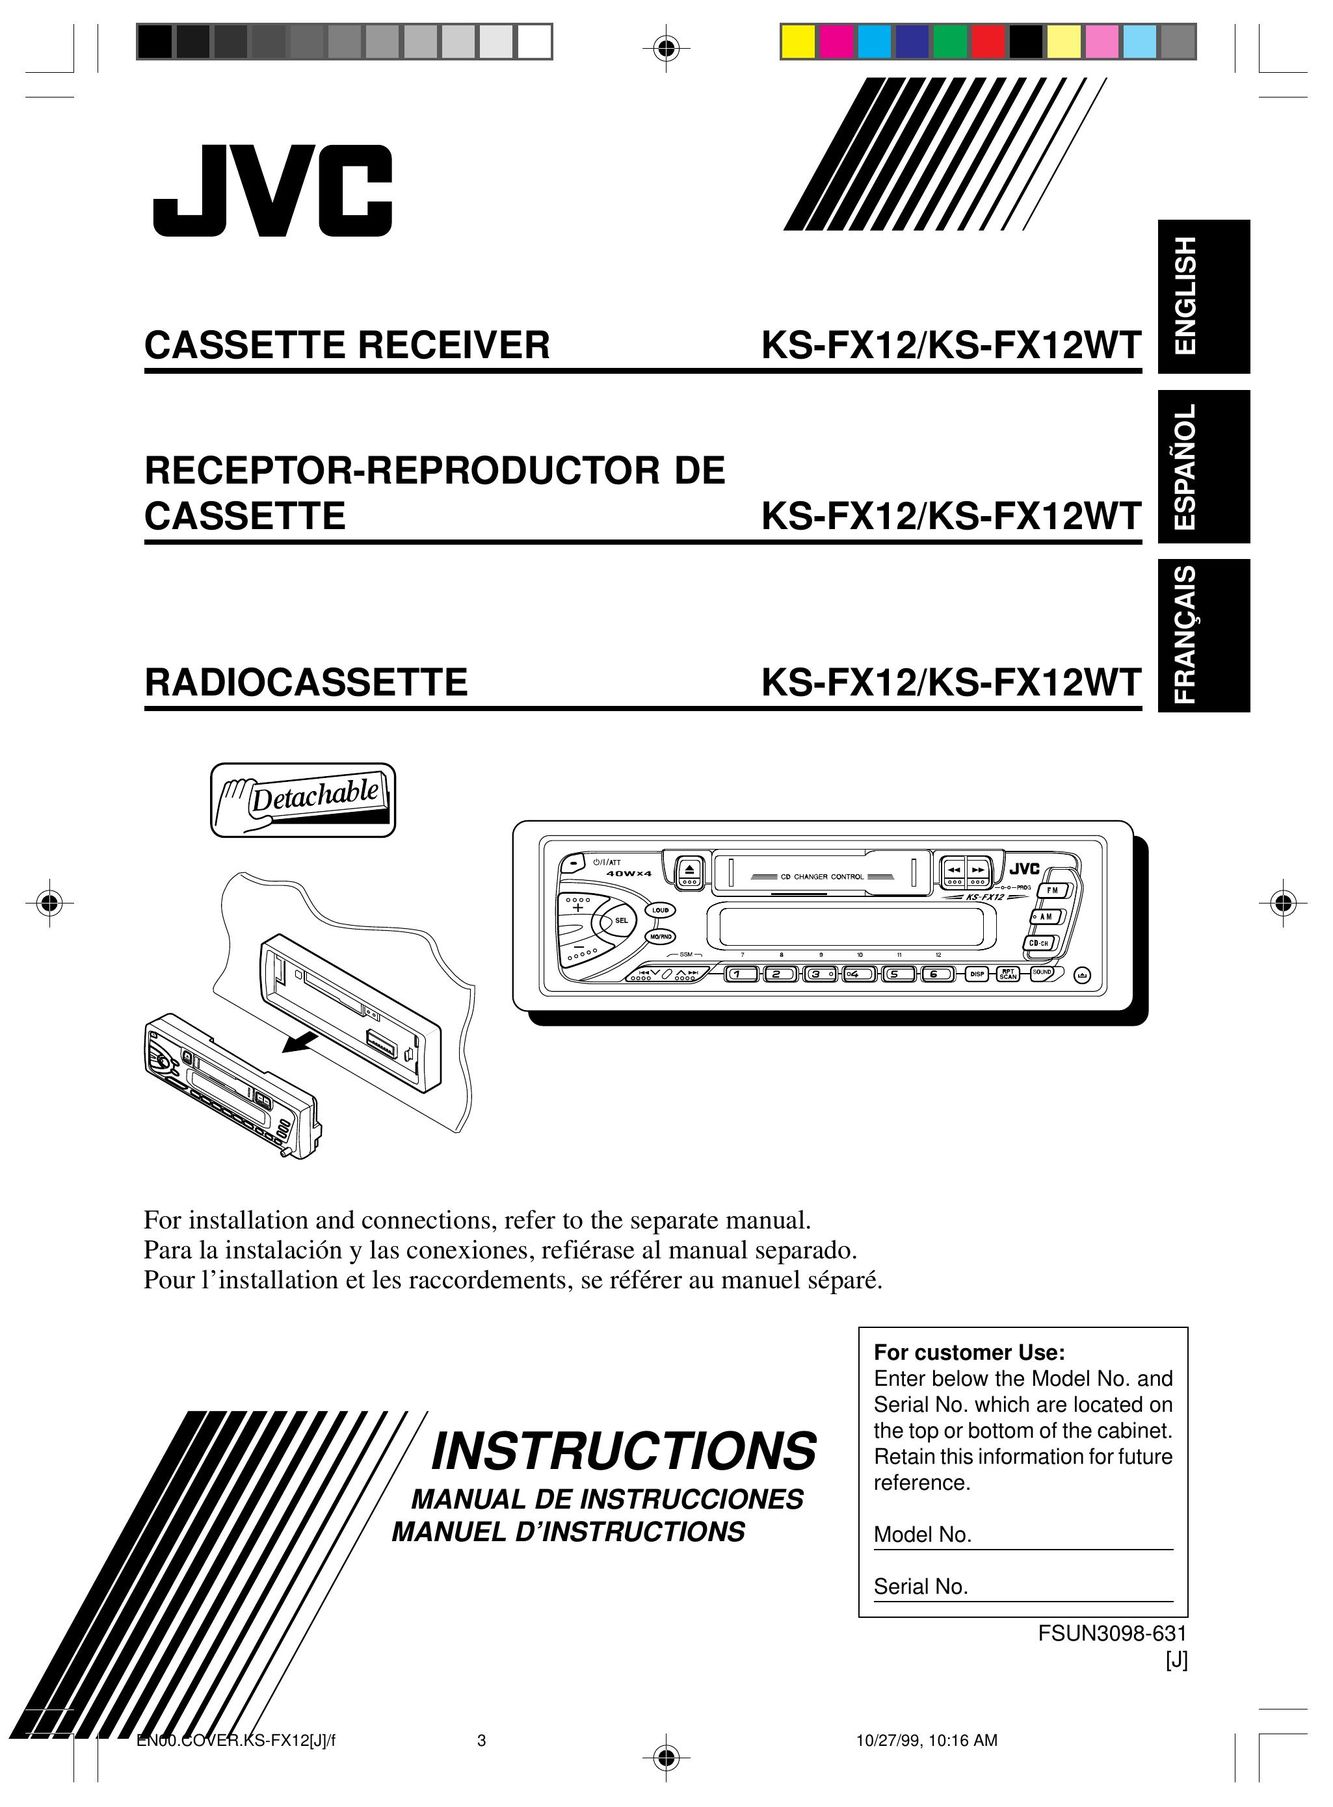 JVC KS-FX12 Microcassette Recorder User Manual